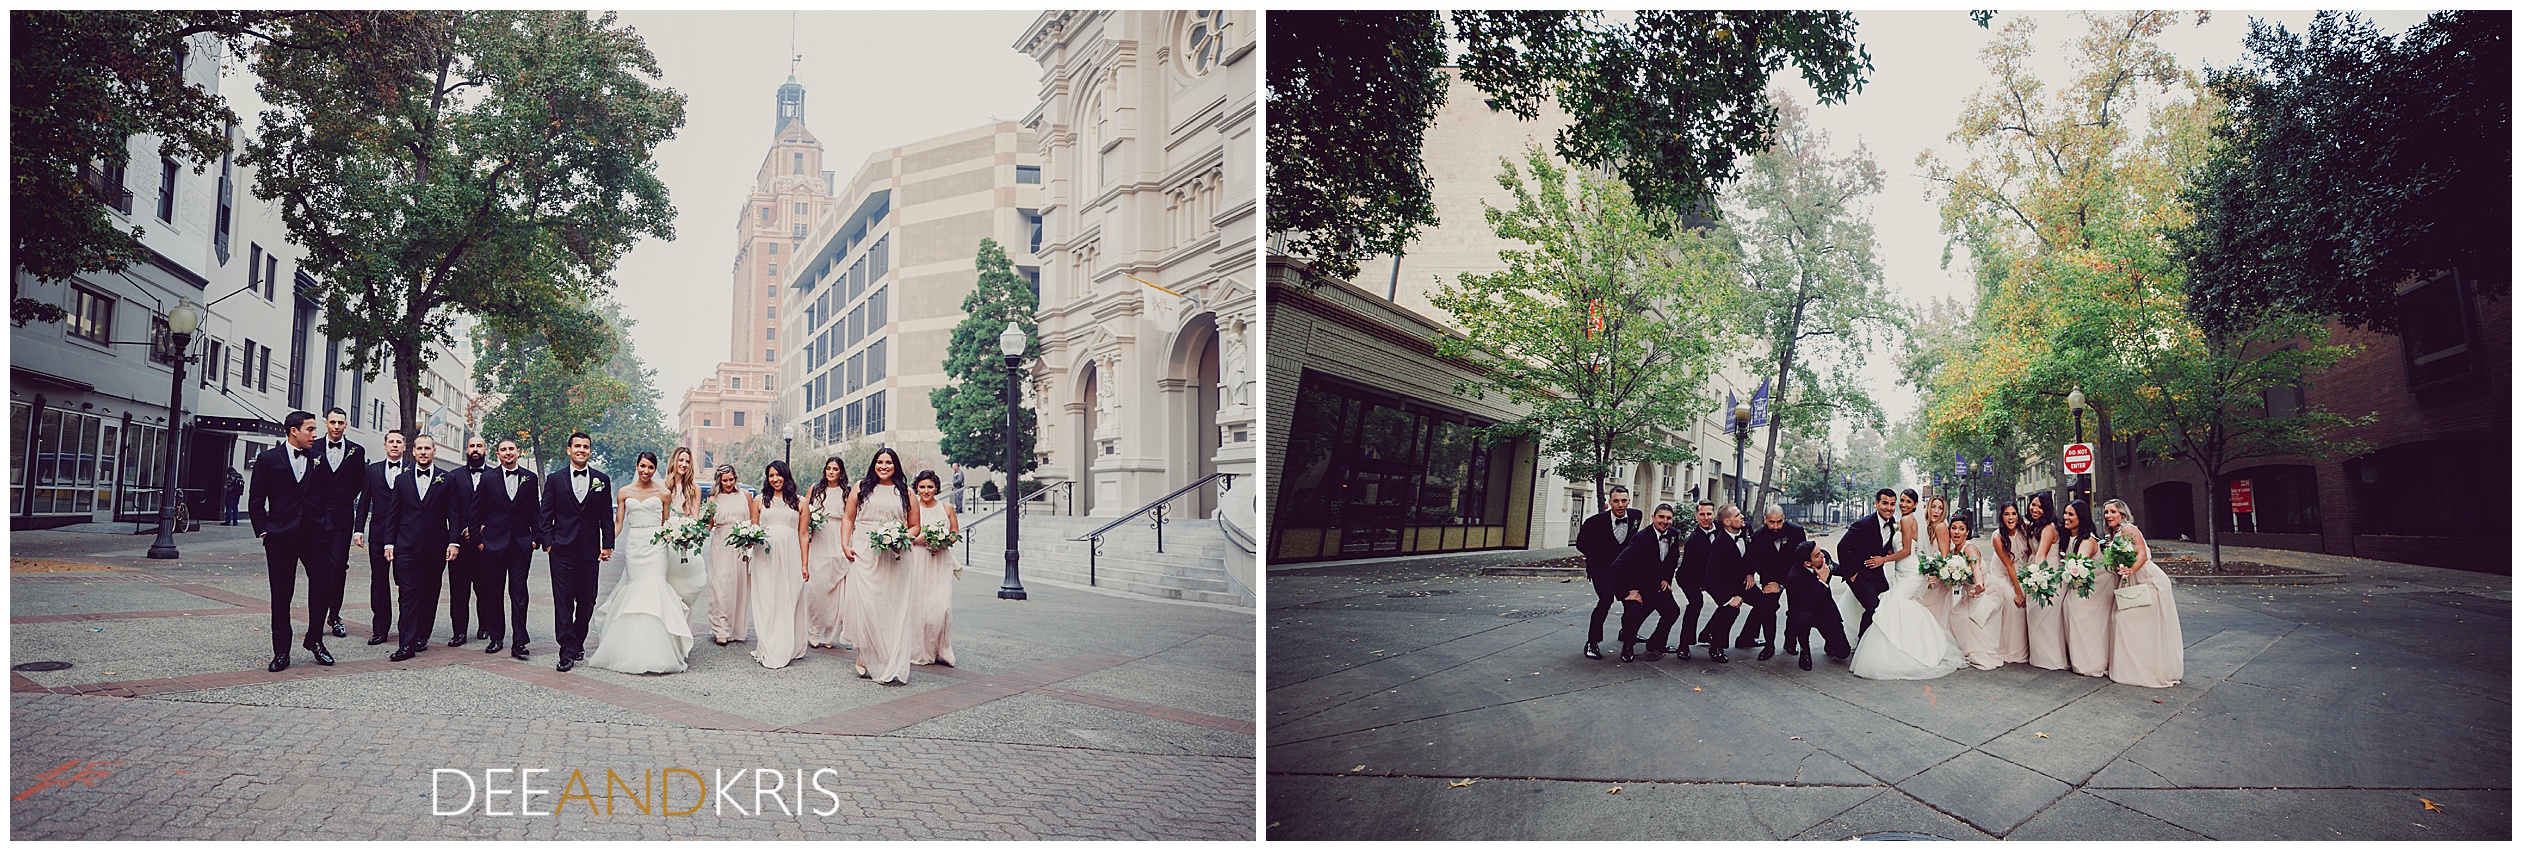 Downtown sacramento wedding photography, The Citizen Hotel Reception, Bridal Party